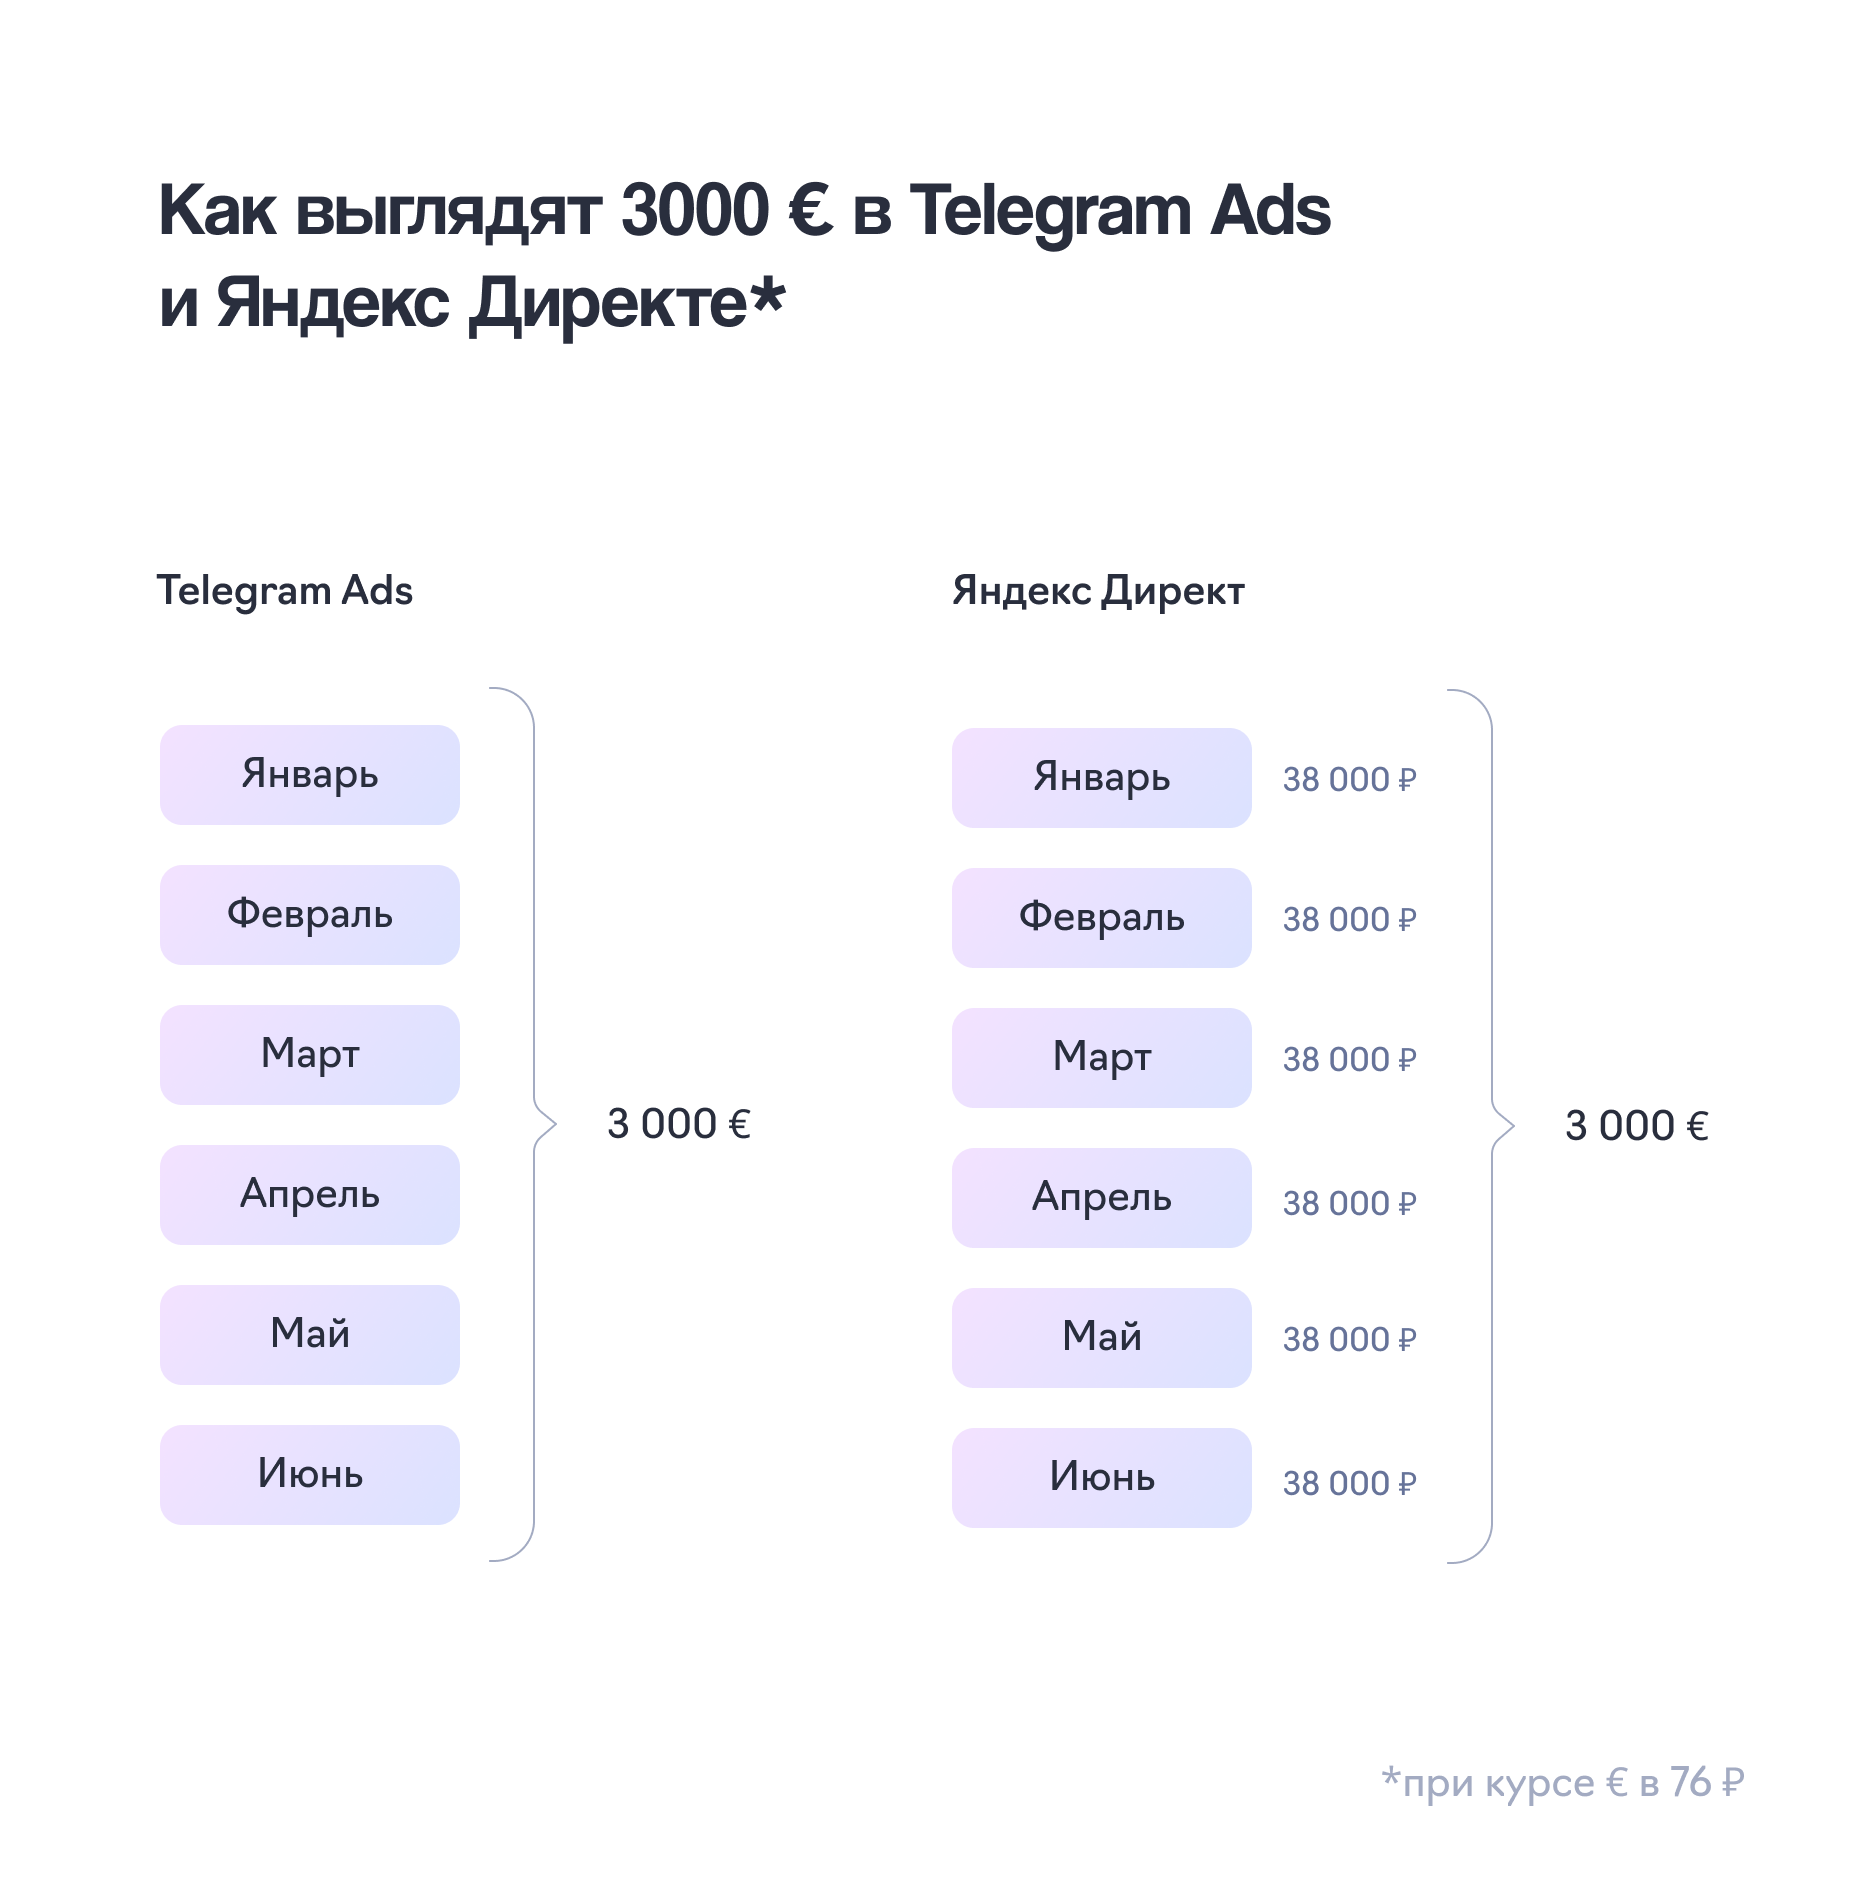 Распределение бюджета в Telegram и Яндекс Директе